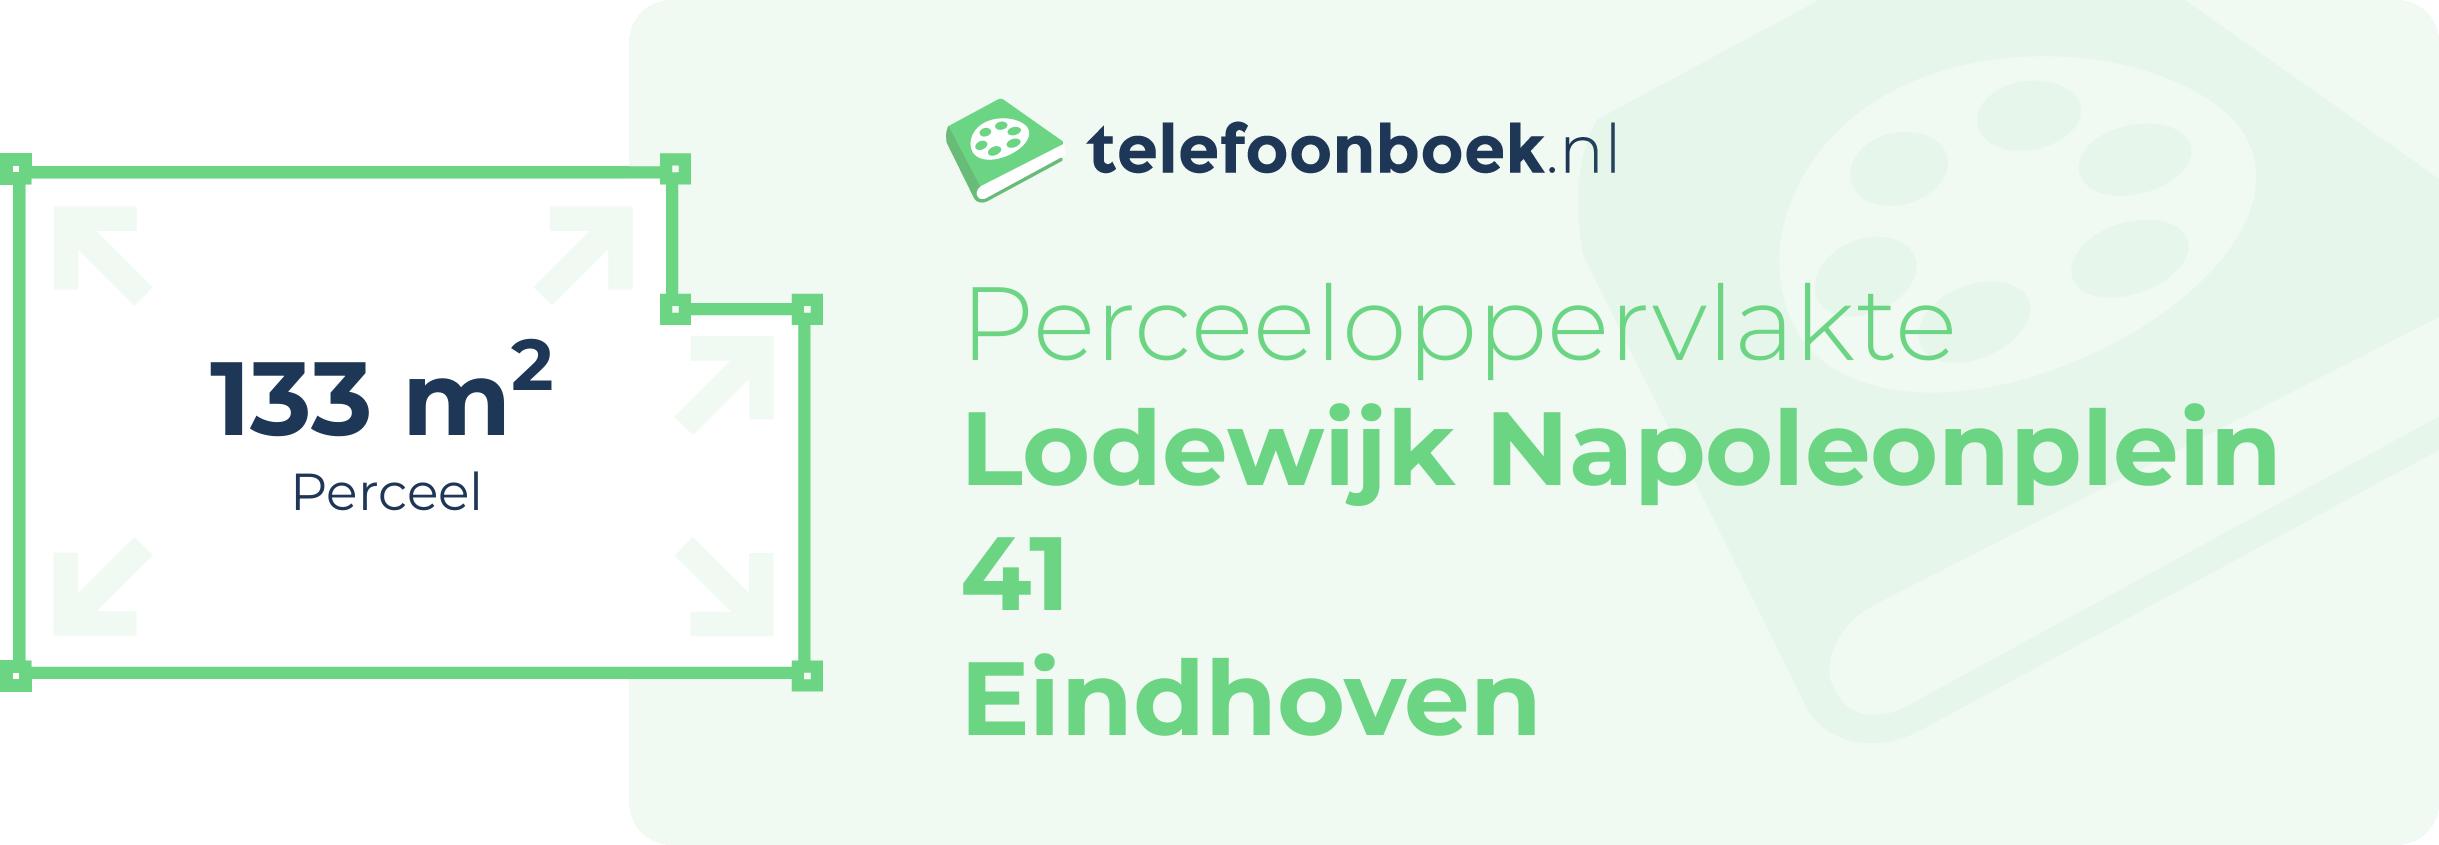 Perceeloppervlakte Lodewijk Napoleonplein 41 Eindhoven